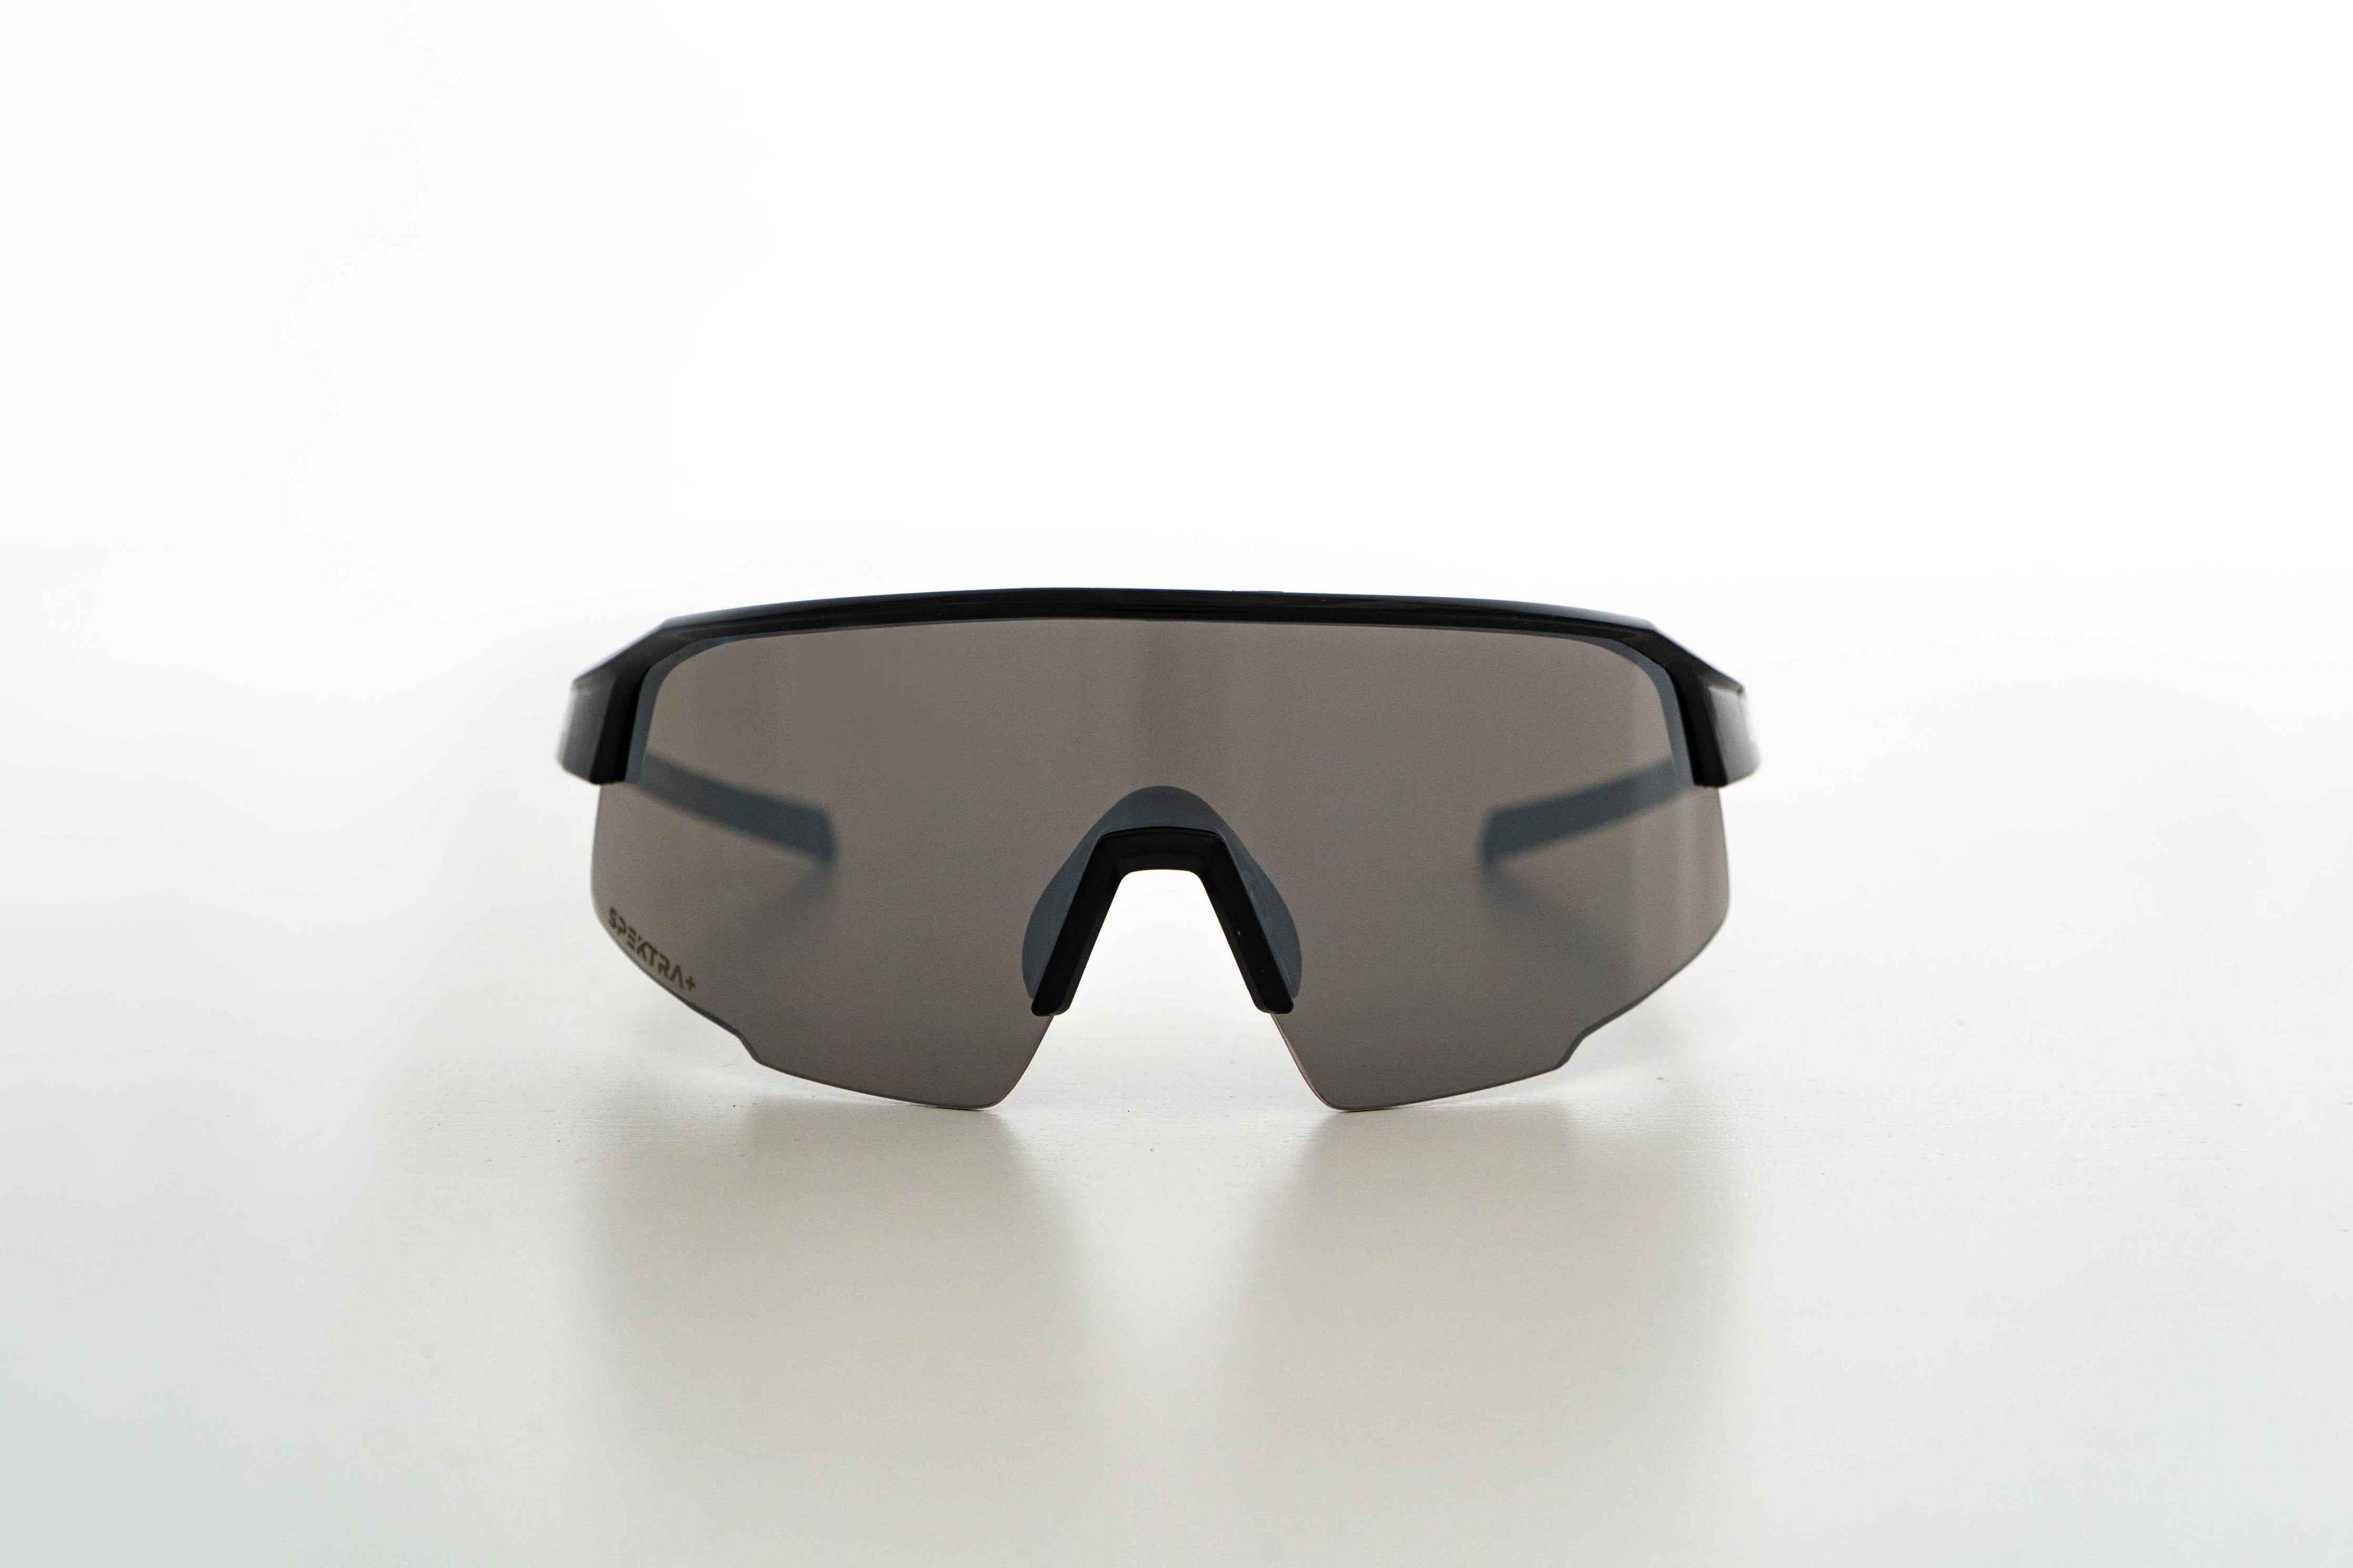 Modèle Summit lunette de soleil avec lentille noir et cadre noir